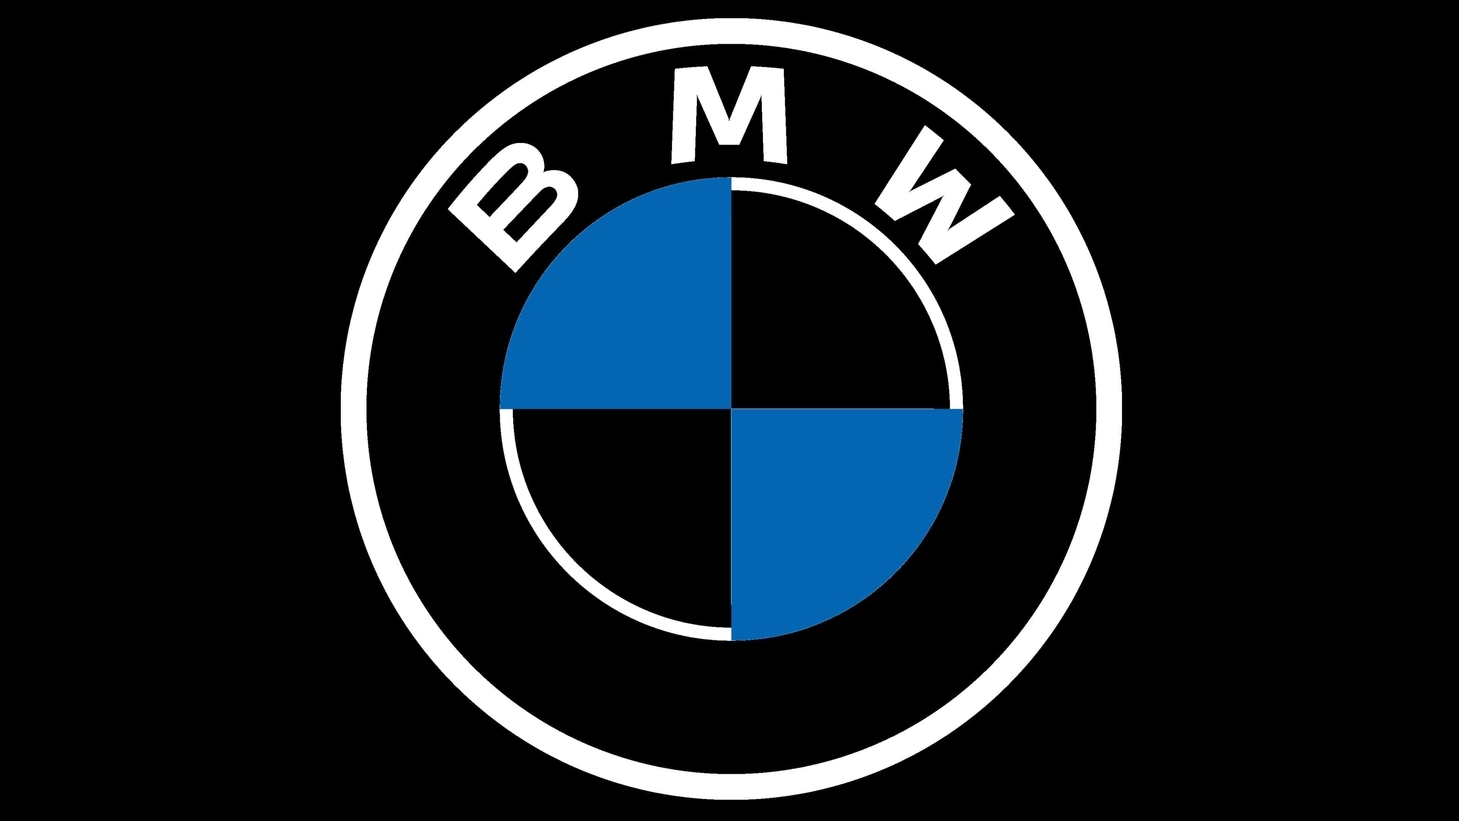 Bmw symbol